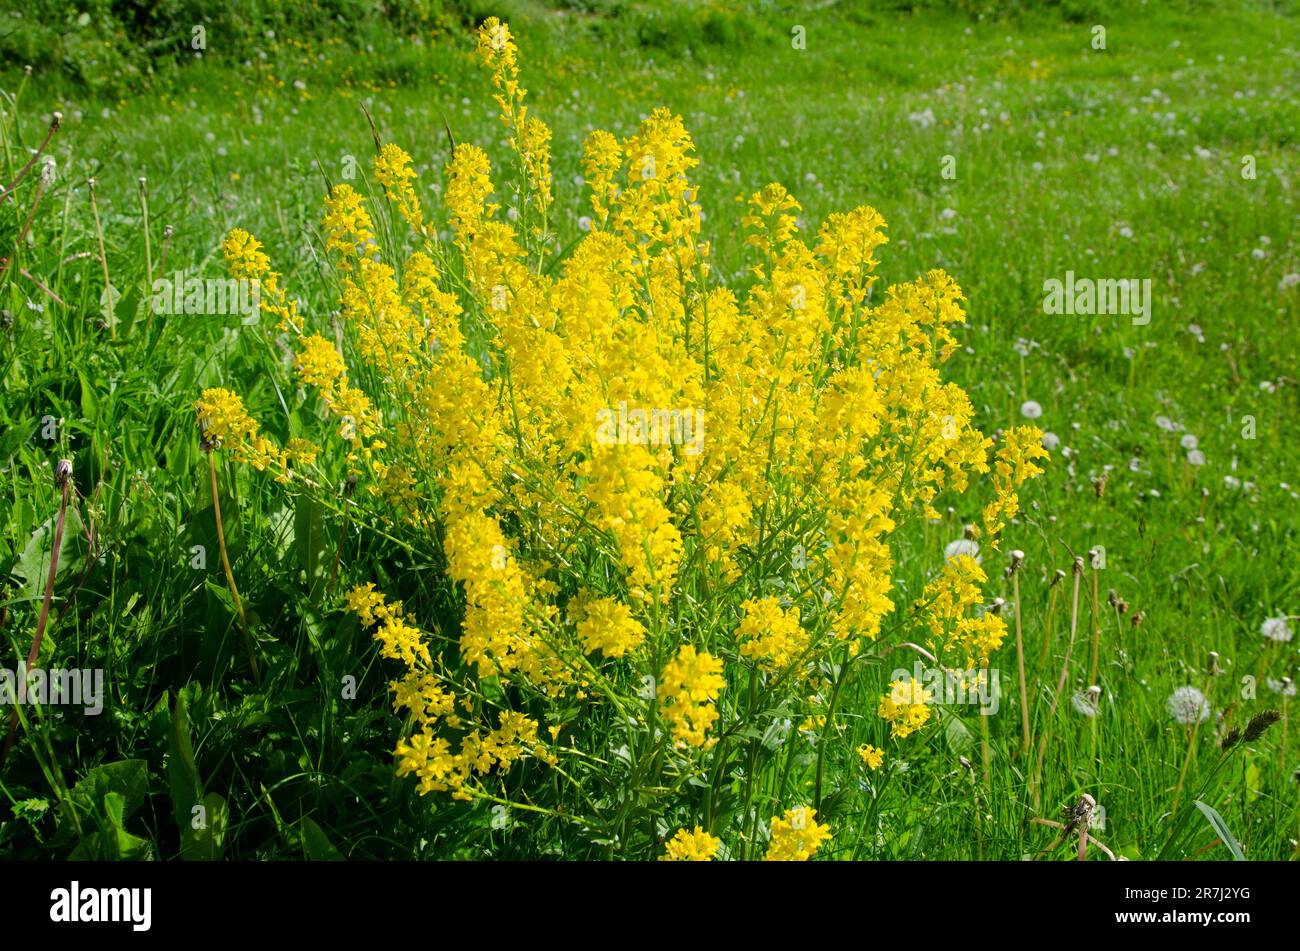 Full frame image of common watercress shrub in full bloom, Barbarea vulgaris Stock Photo